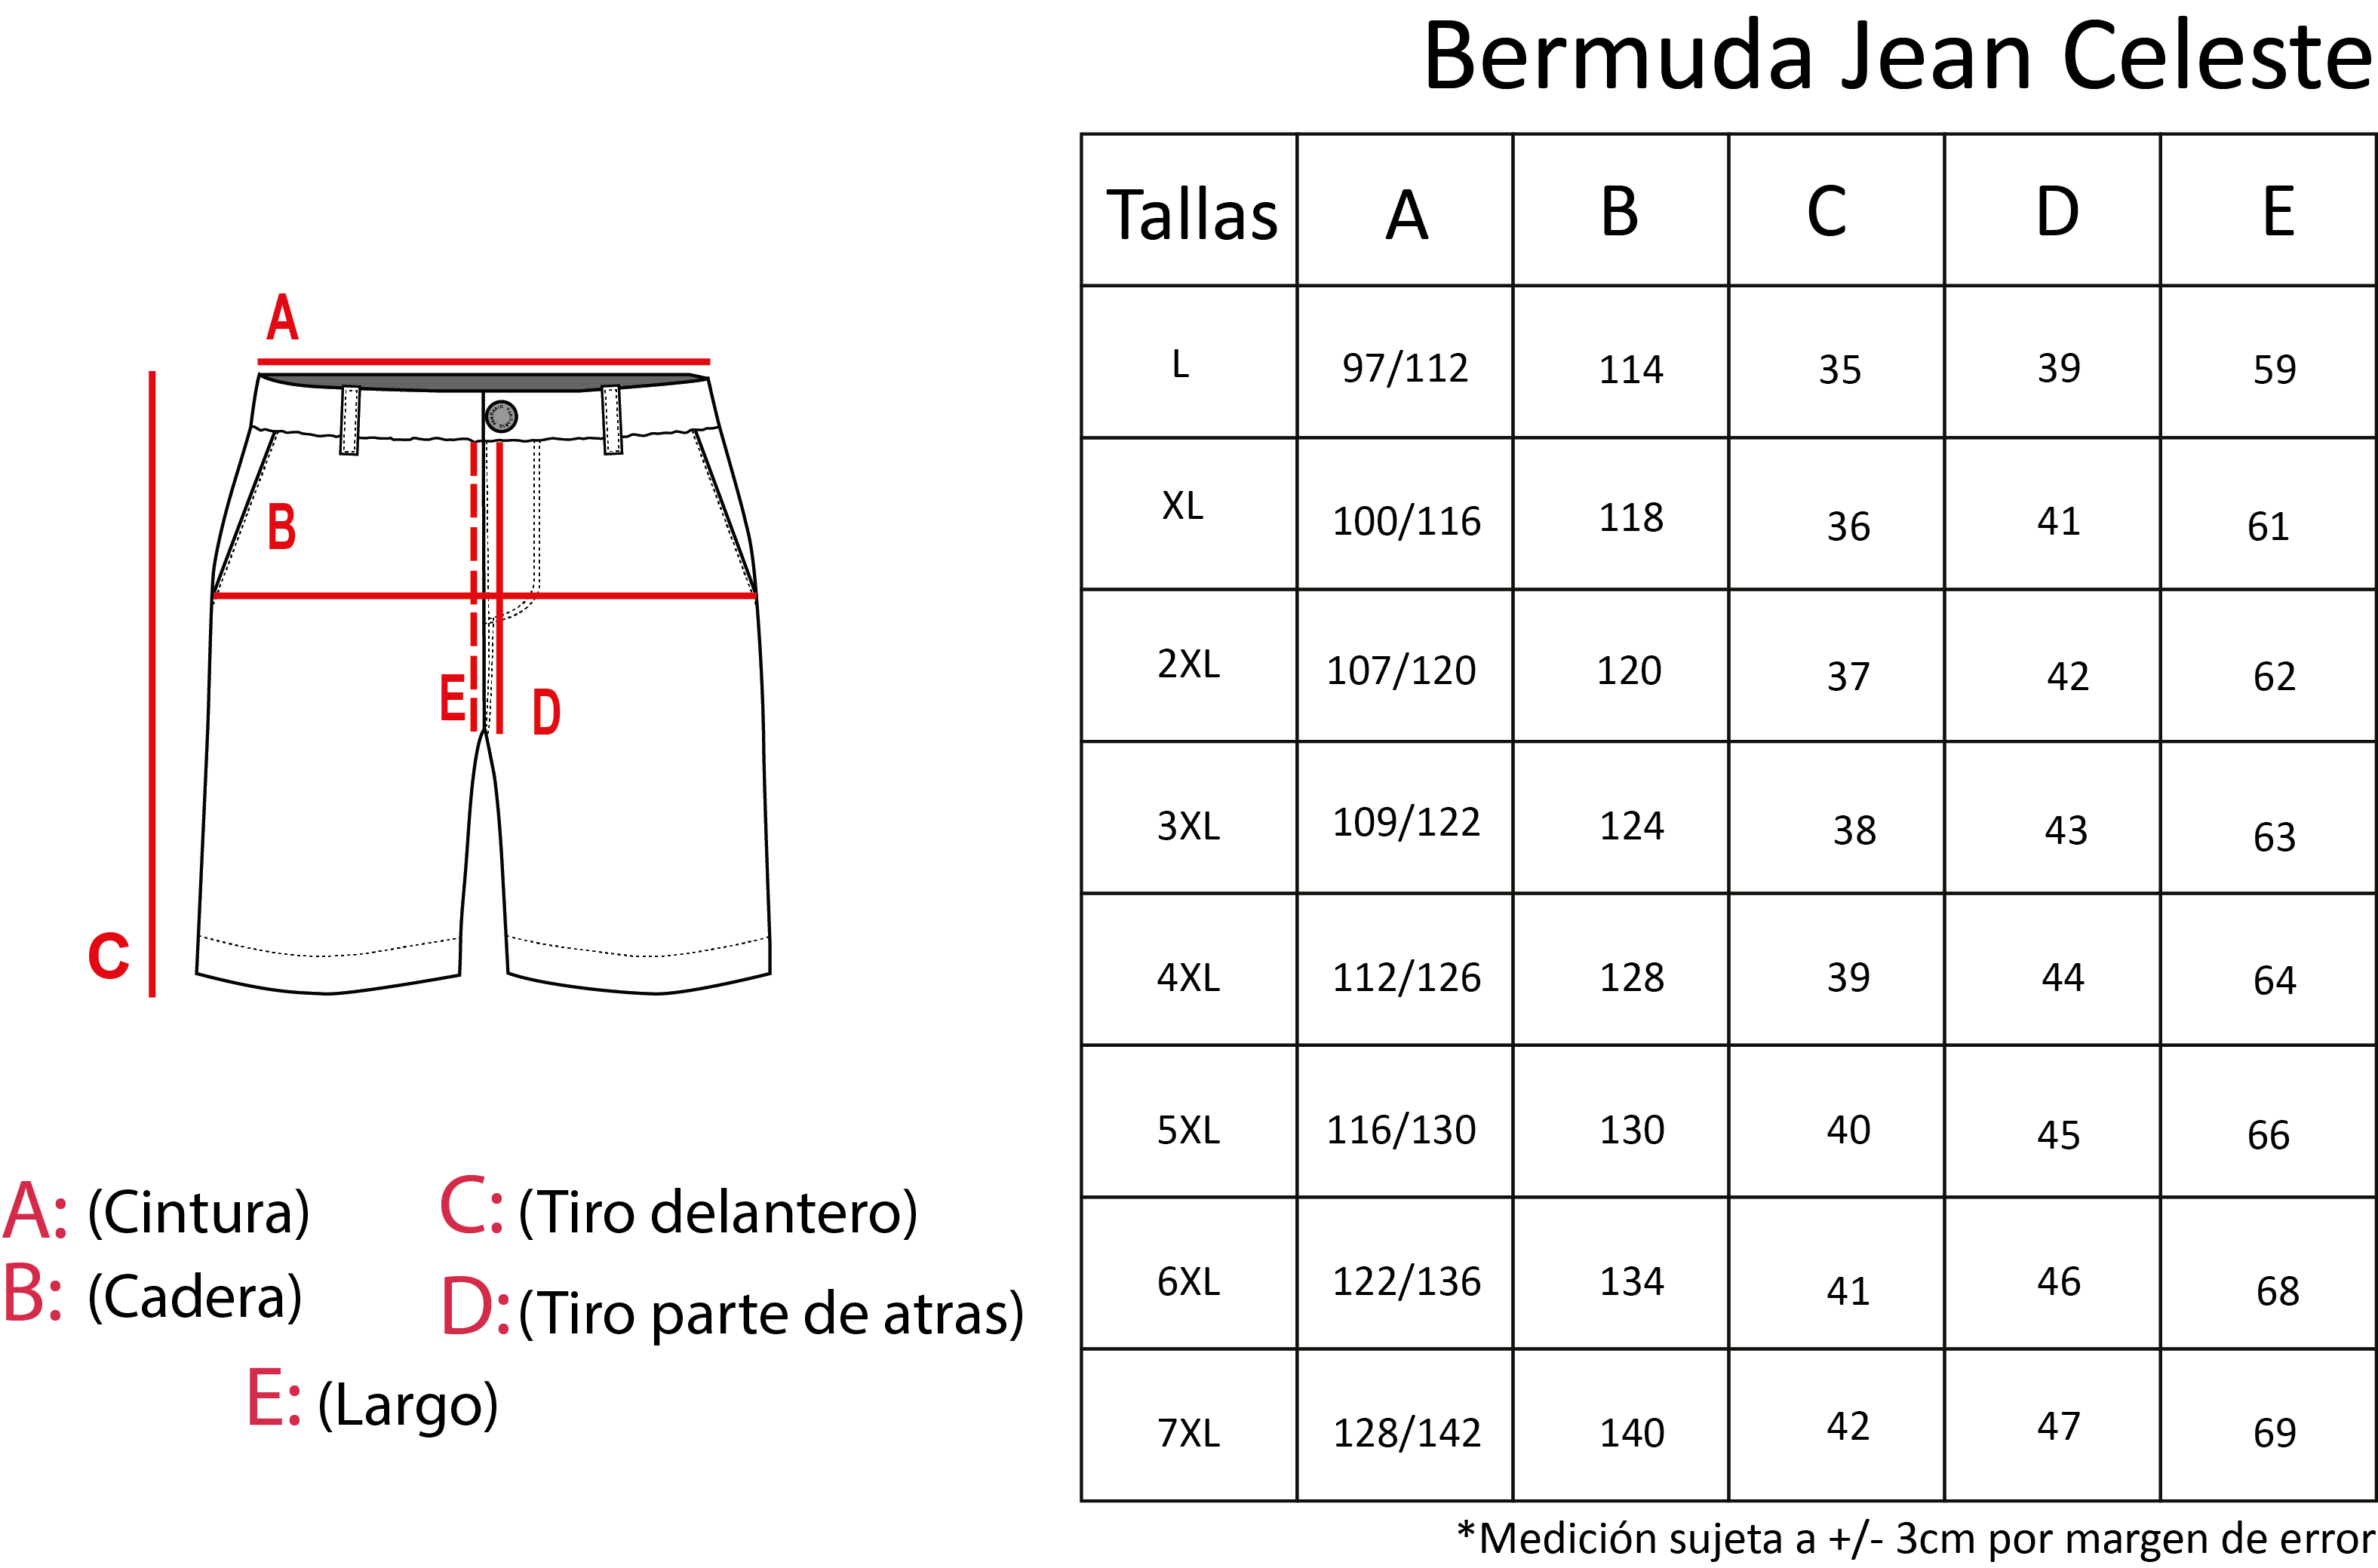 Bermuda jean celeste